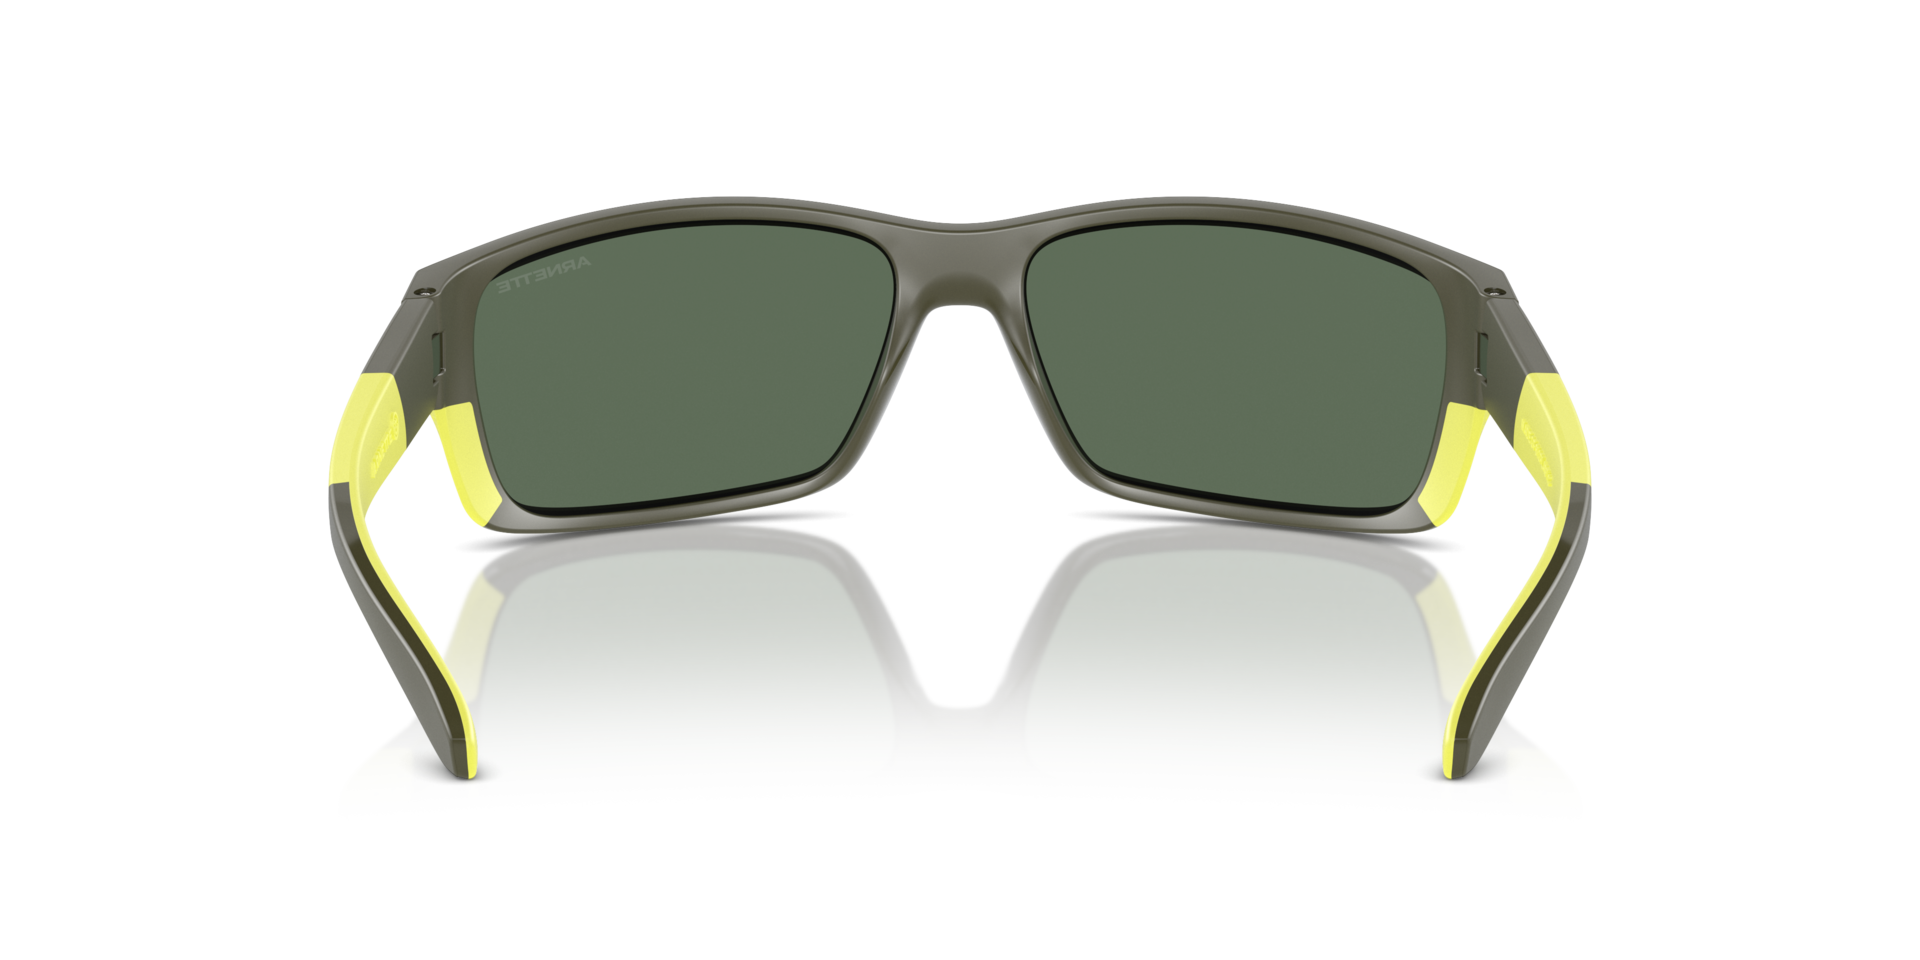 Das Bild zeigt die Sonnenbrille AN4336 28546R von der Marke Arnette in grau/gelb.